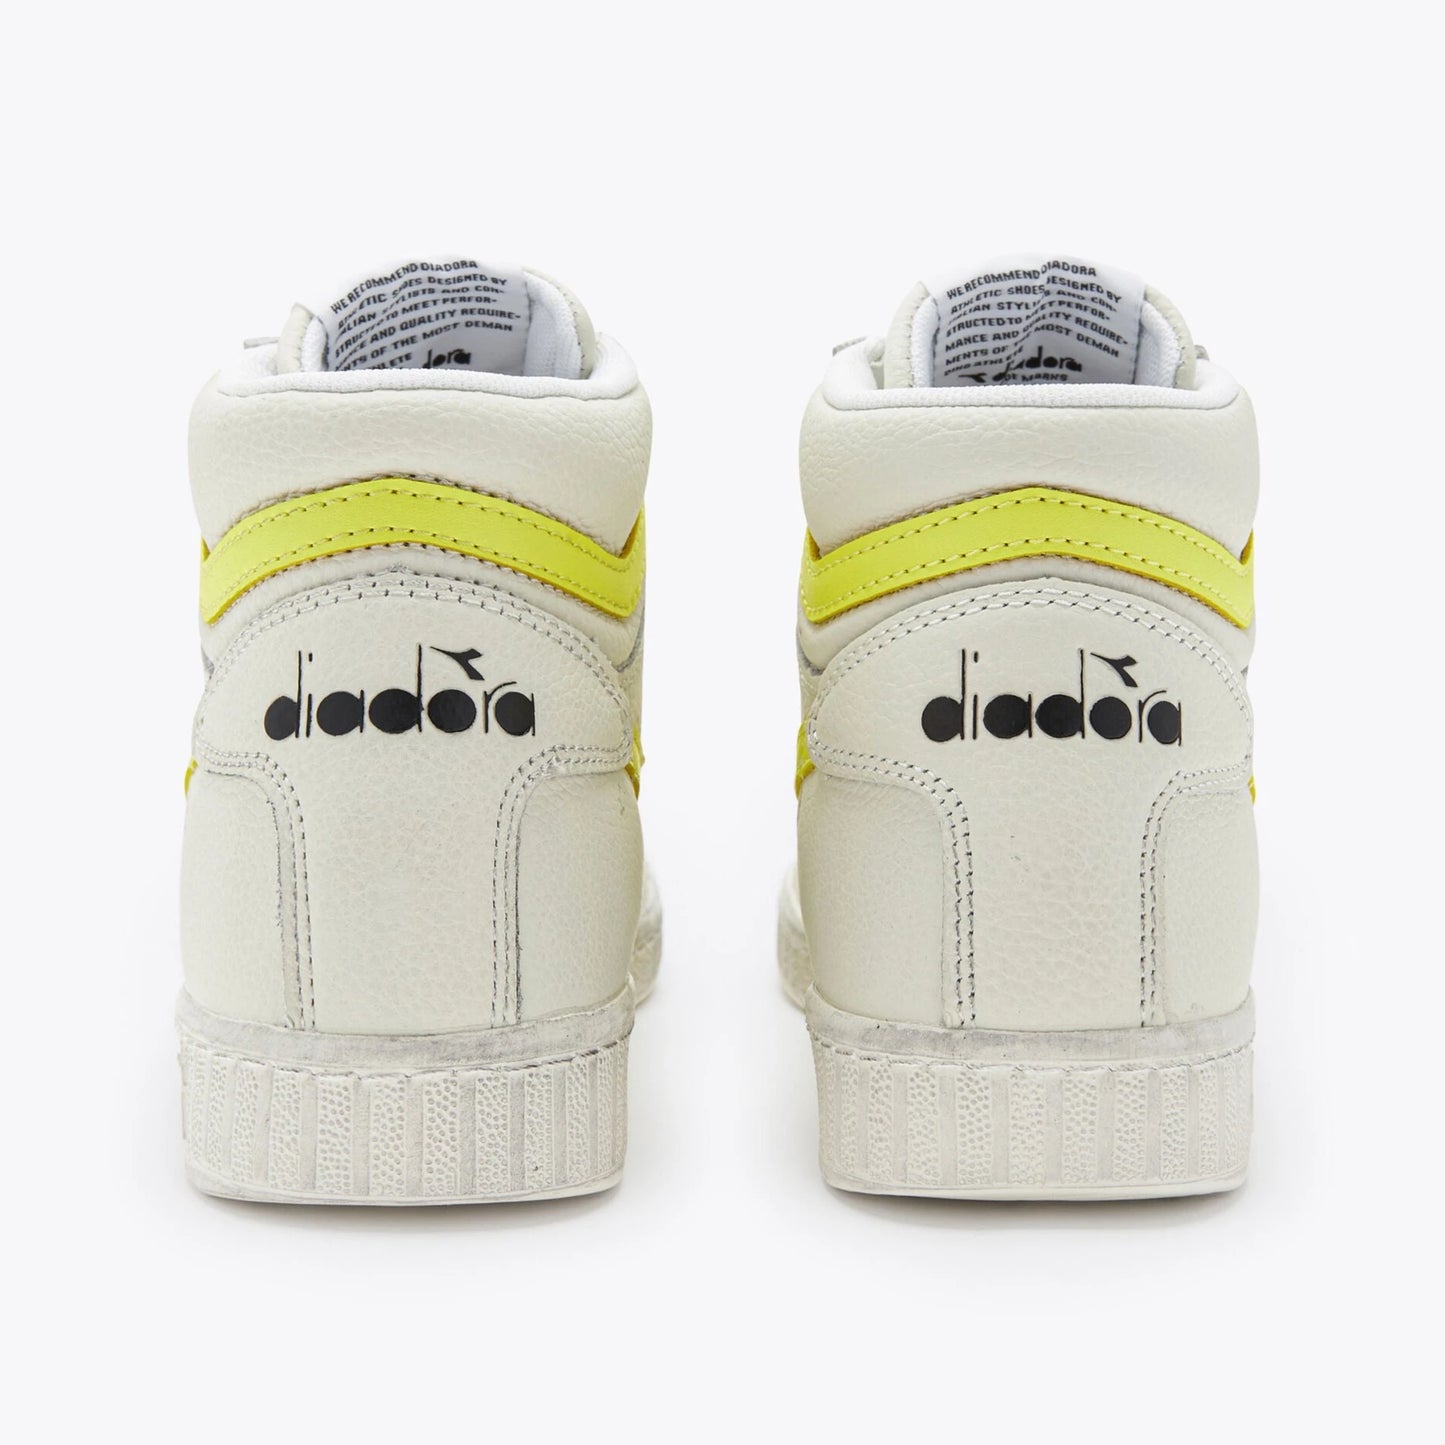 Sneakers De La Marca Diadora Para Unisex Modelo Game L High Fluo Wax- White/Yellow Fluo En Color Amarillo